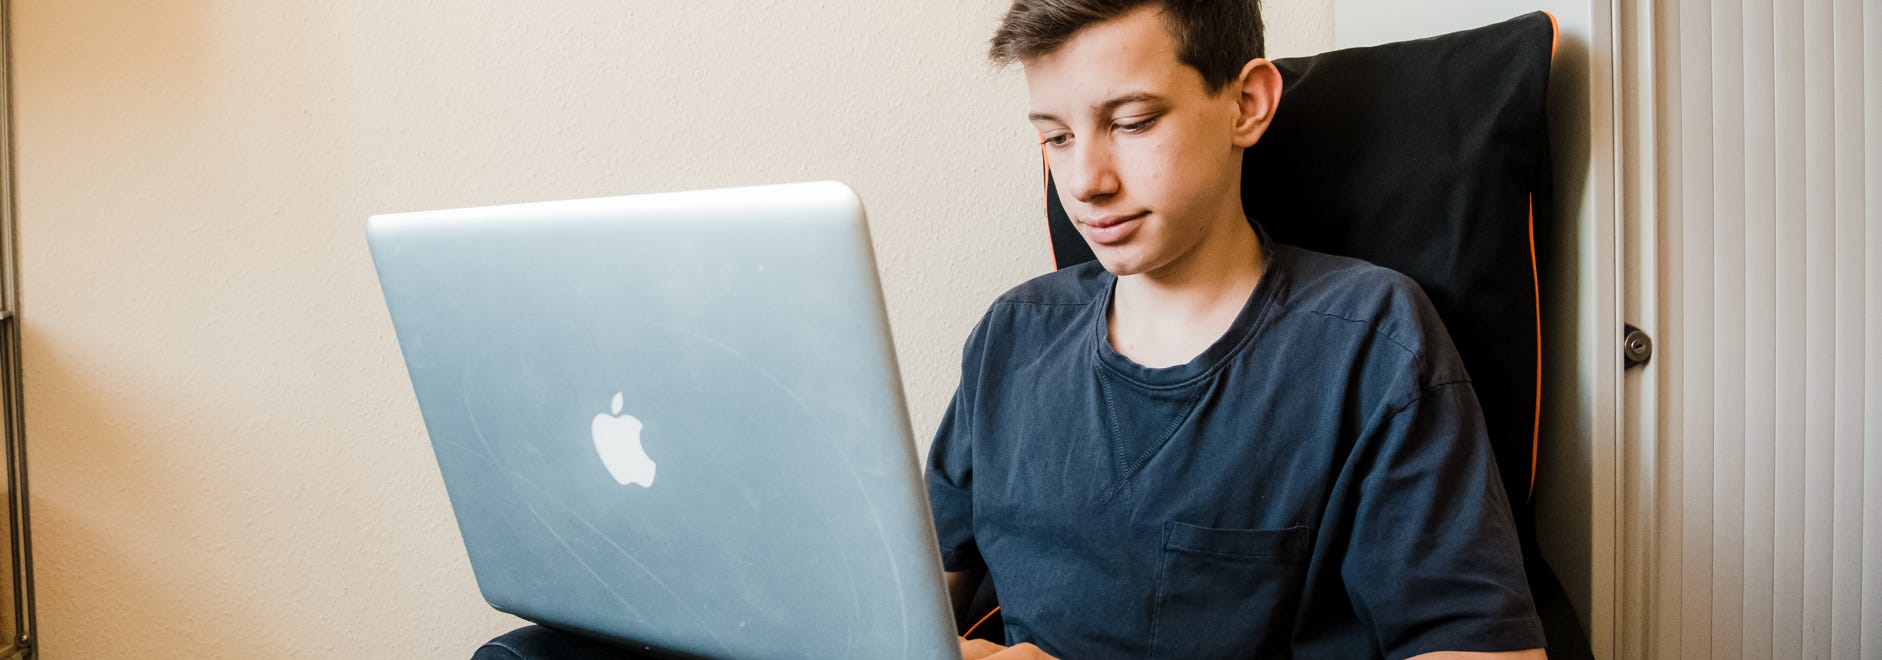 Junge mit Laptop beim Online lernen